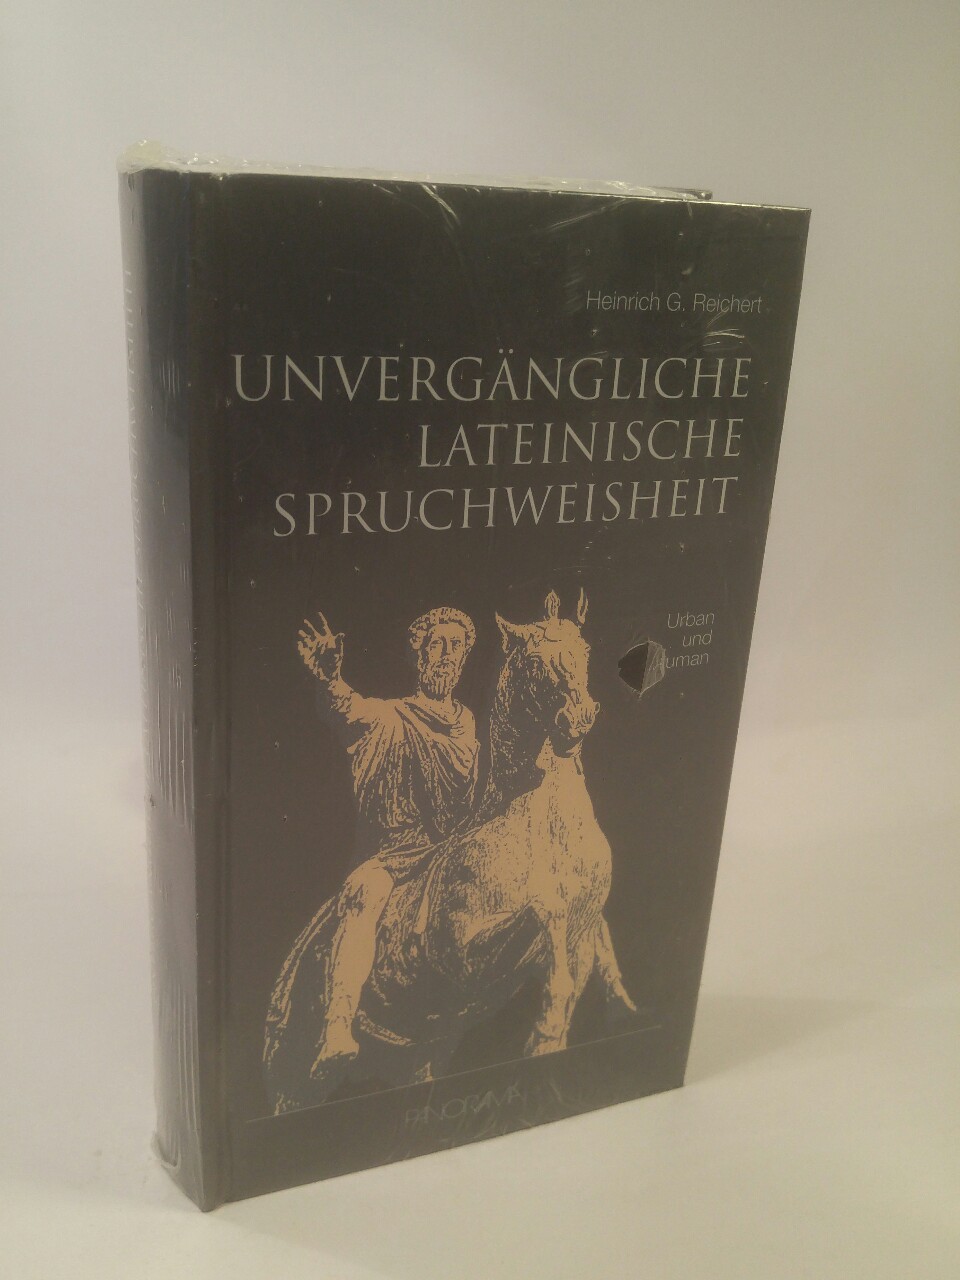 Unvergängliche lateinische Spruchweisheit [Neubuch] Urban und human - Reichert, Heinrich G und Siegfried Schmidli